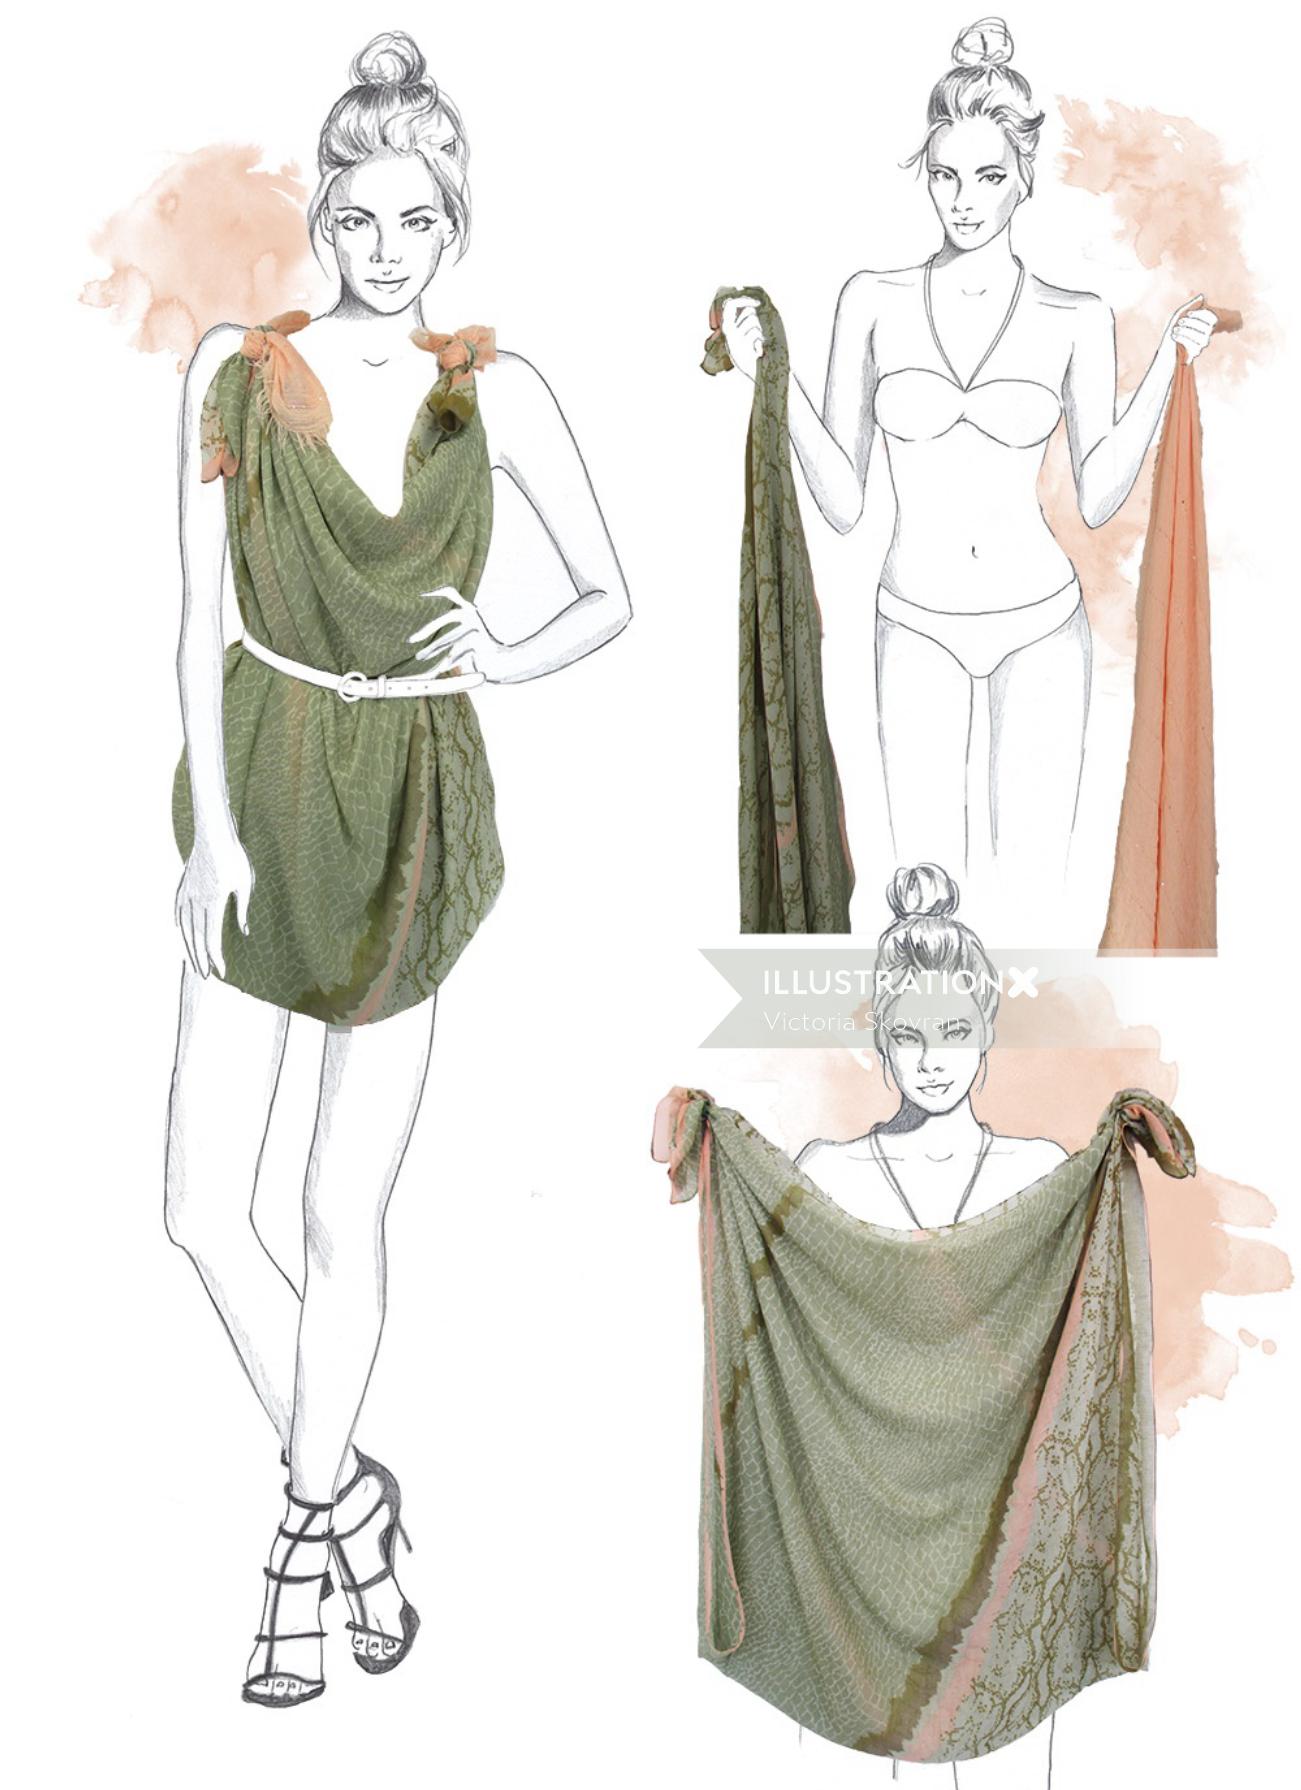 Illustration of a lady dress